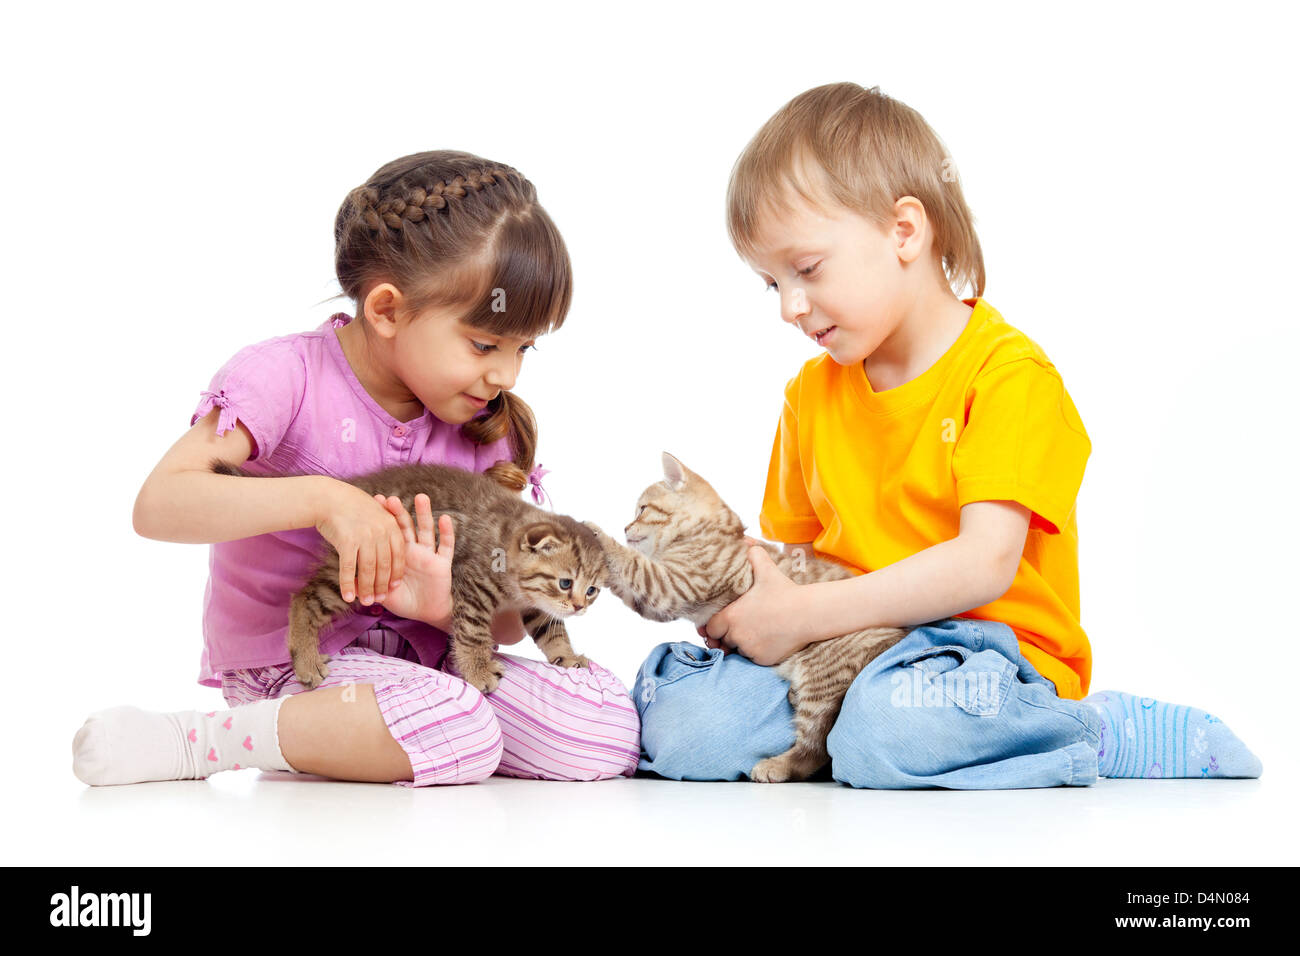 Детки играют с кисками. Ребенок играет с котенком. Девочка с двумя котятами. Девочка играет с котенком.